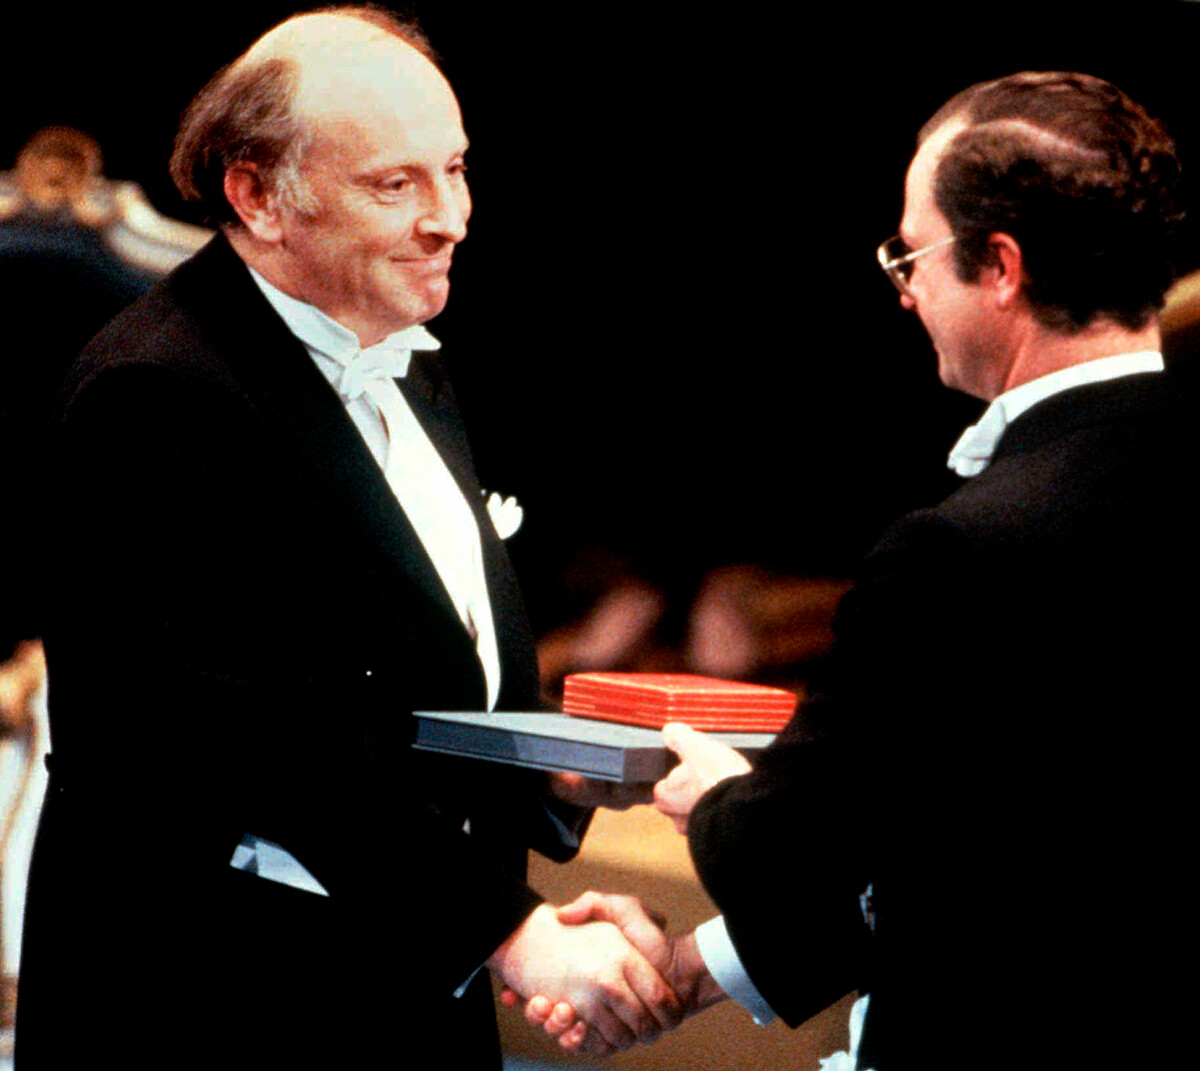 El poeta Joseph Brodsky, galardonado con el Premio Nobel, recibe el Premio Nobel de manos del rey sueco Carlos XVI Gustavo en la ceremonia de entrega del Nobel en Estocolmo, el 10 de diciembre de 1987.